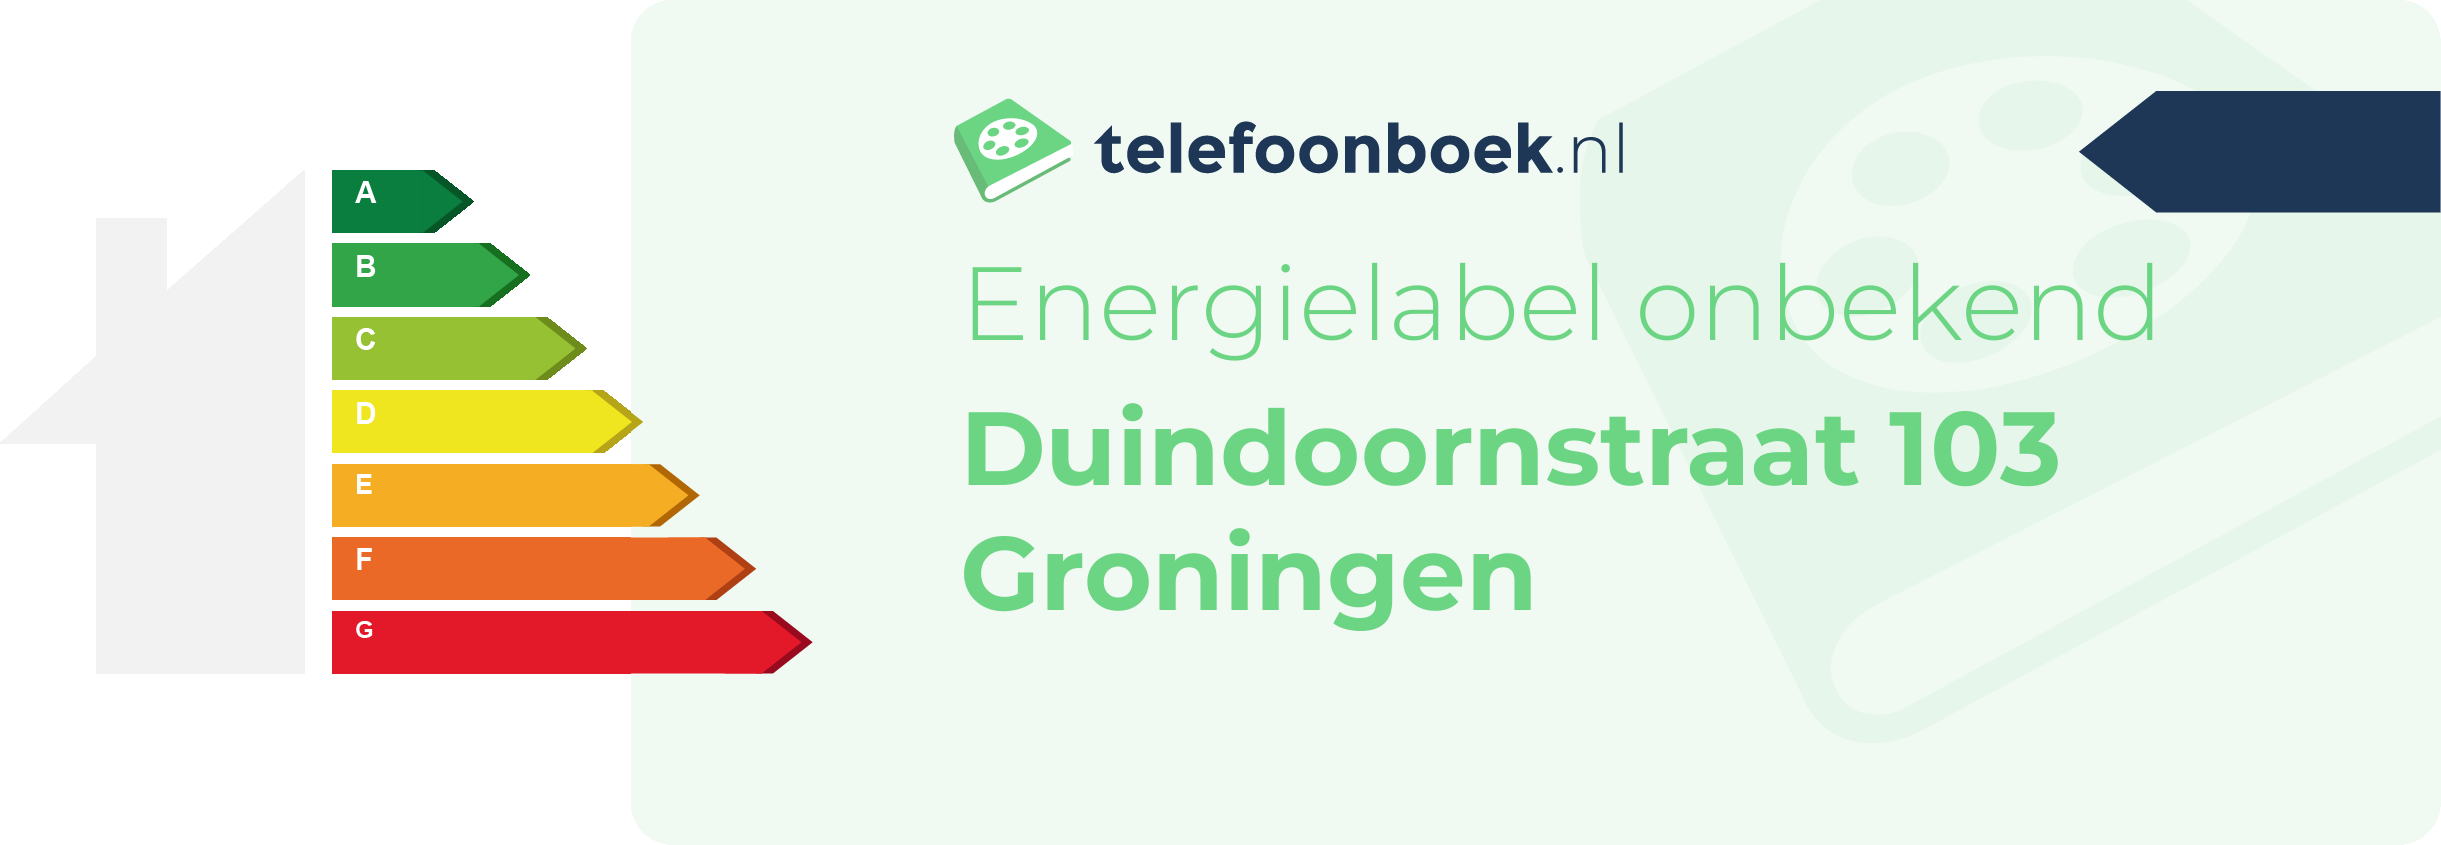 Energielabel Duindoornstraat 103 Groningen